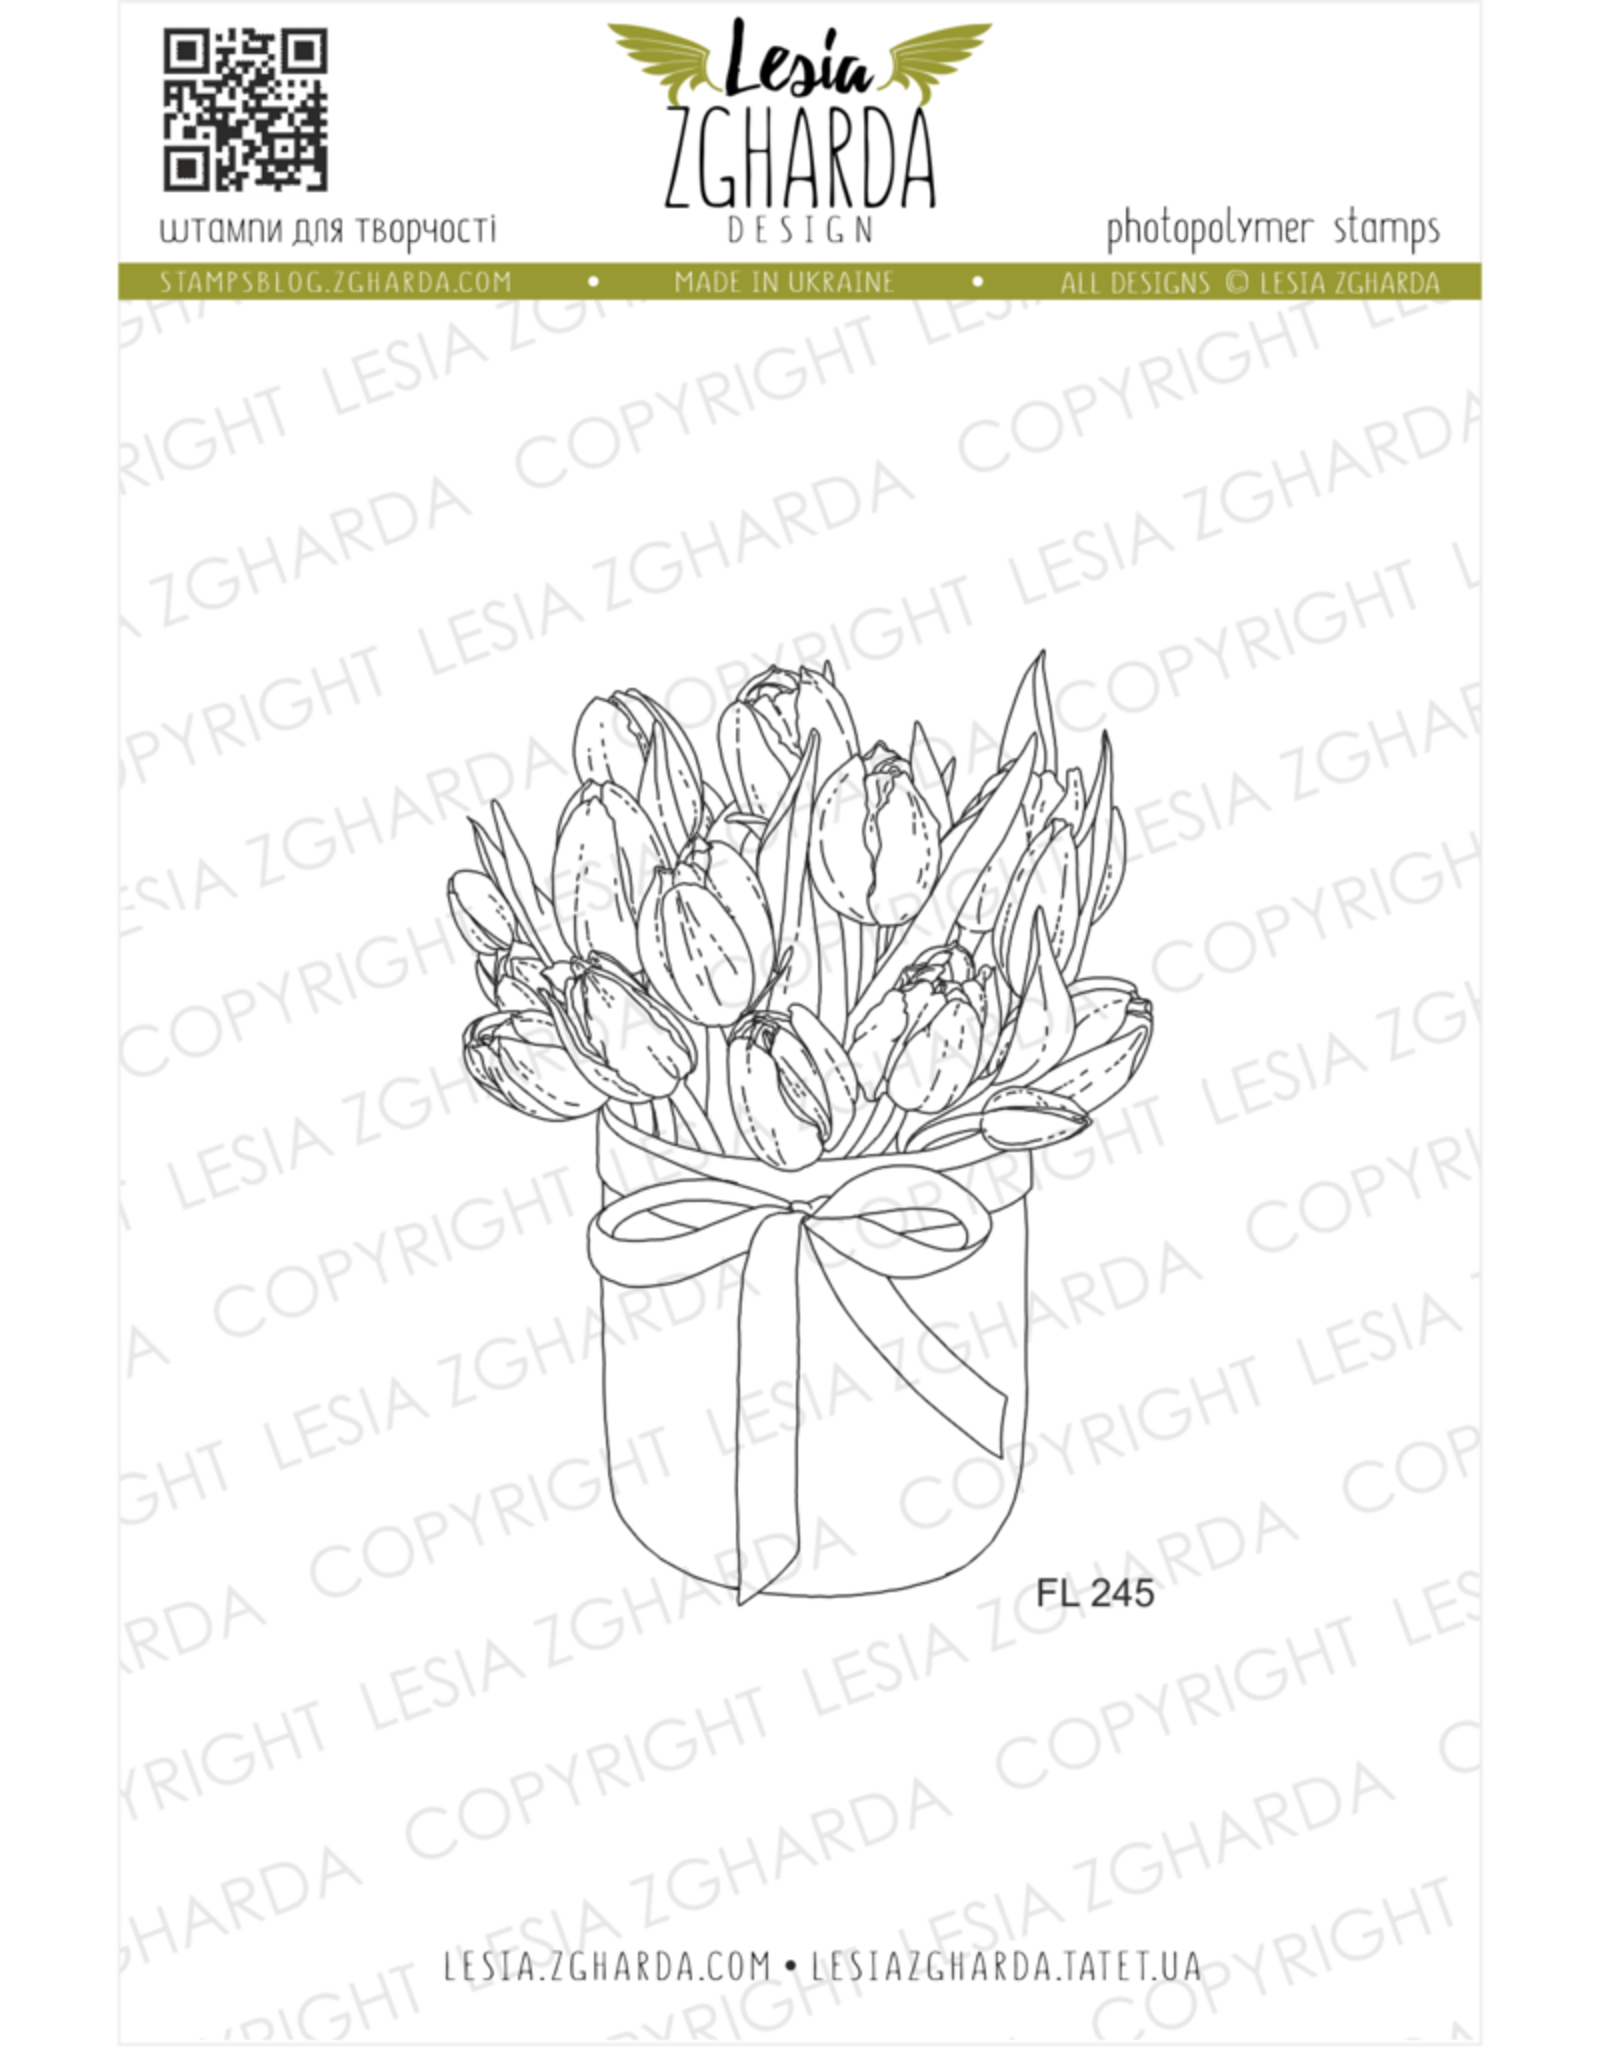 Lesia Zgharda Lesia Zgharda Design Stamp Tulips in the box FL245